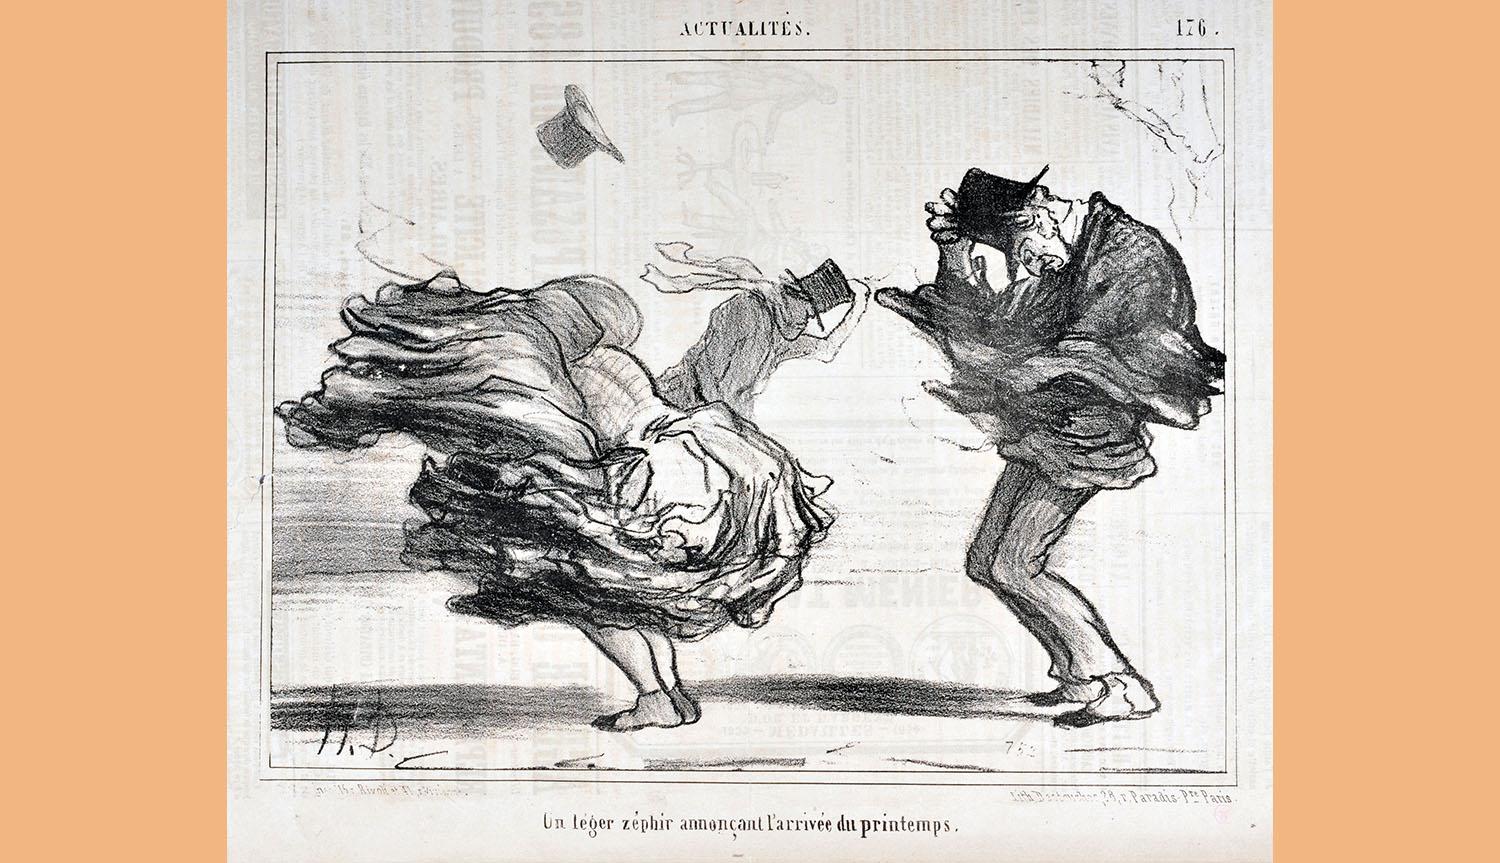 La gravure d'Honoré Daumier "Un léger zéphir annonçant l'arrivée du printemps" figure parmi les oeuvres de la collection de Curt Glaser acquises par le Kunstmuseum de Bâle en 1933. [AFP - JEAN BERNARD LEEMAGE]